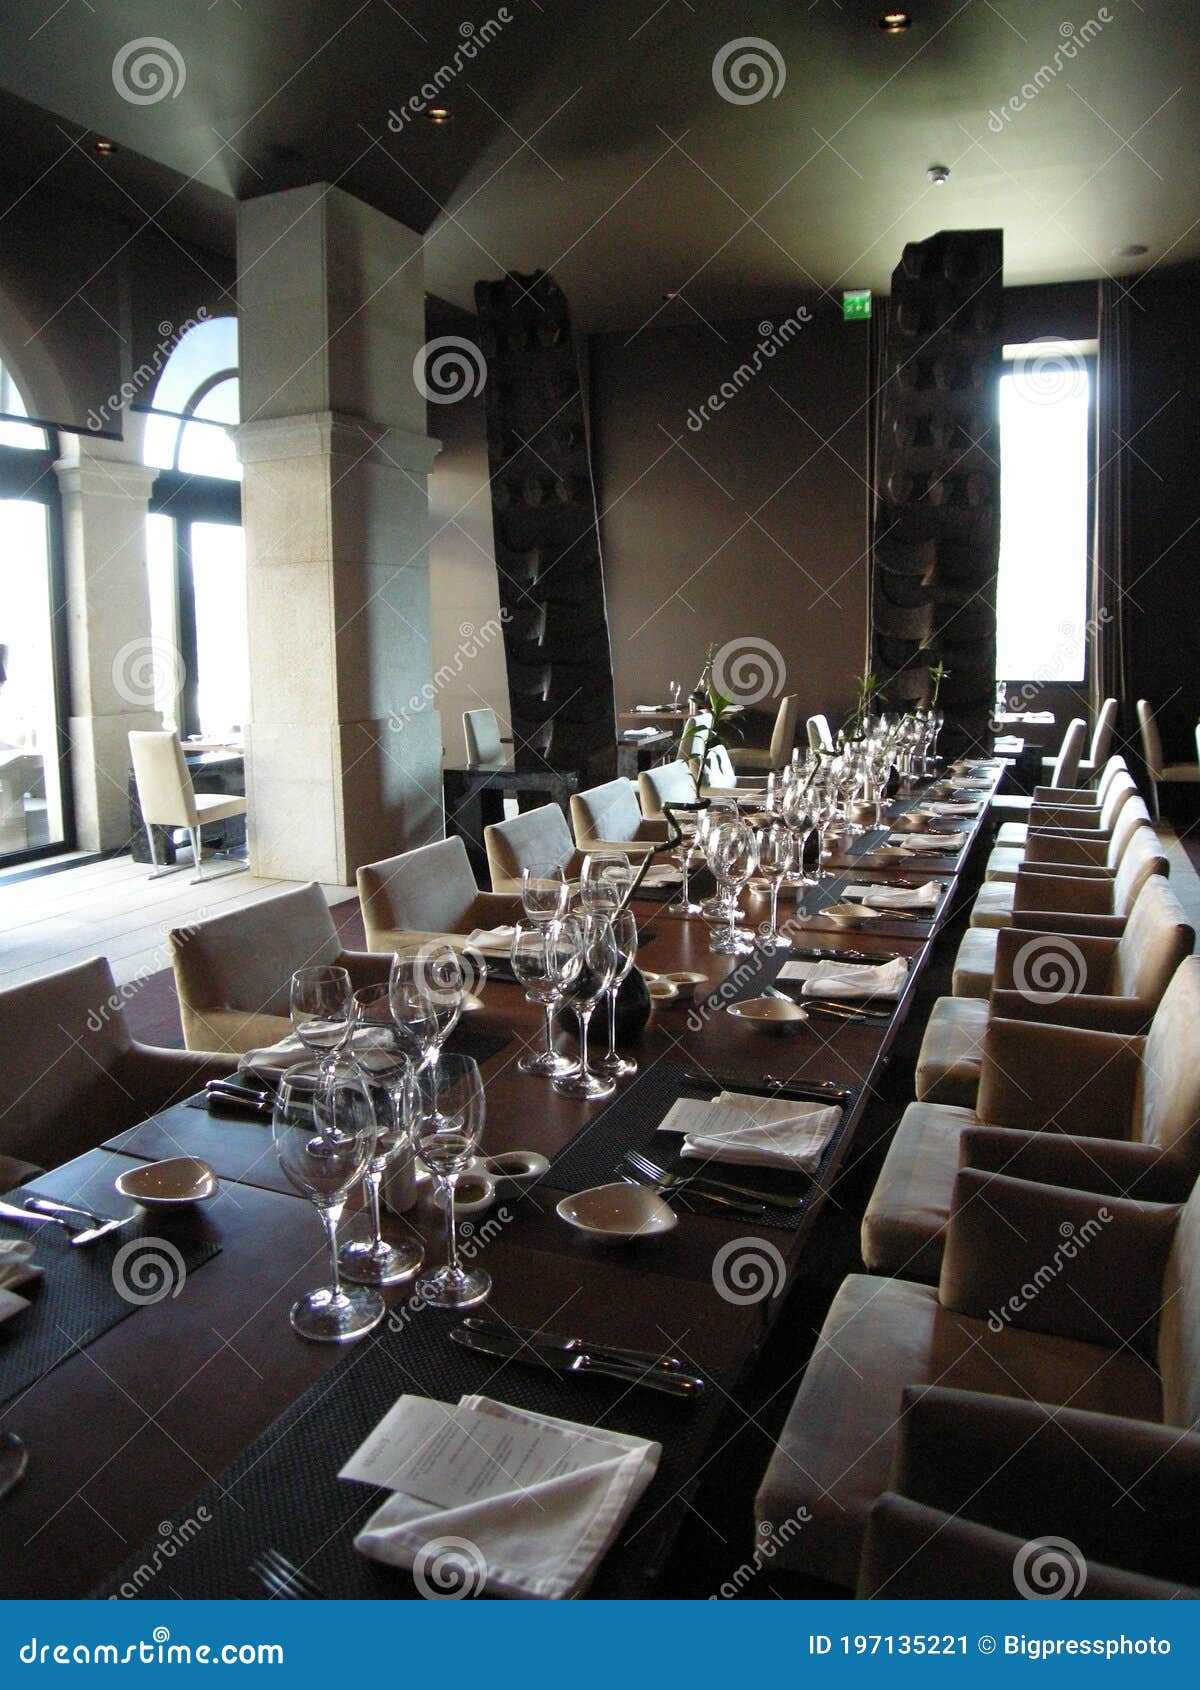 luxury restaurant dinning setting at an elegant table for dinner